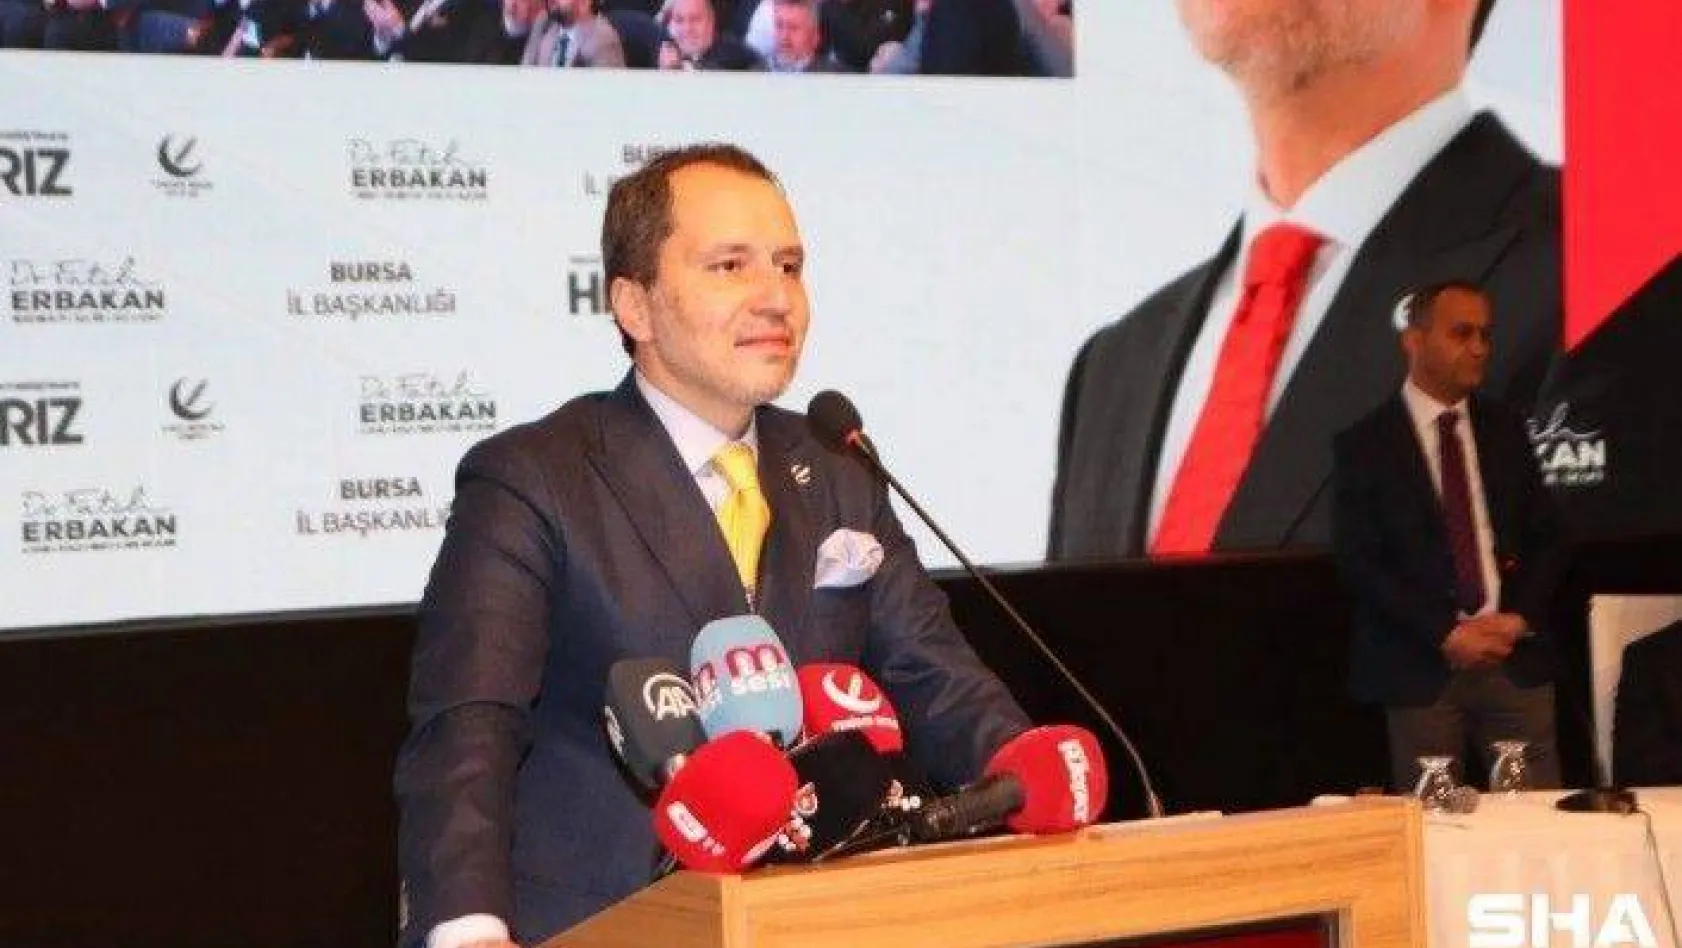 Fatih Erbakan, iktidara gelmeleri durumunda yapacakları ilk işi açıkladı